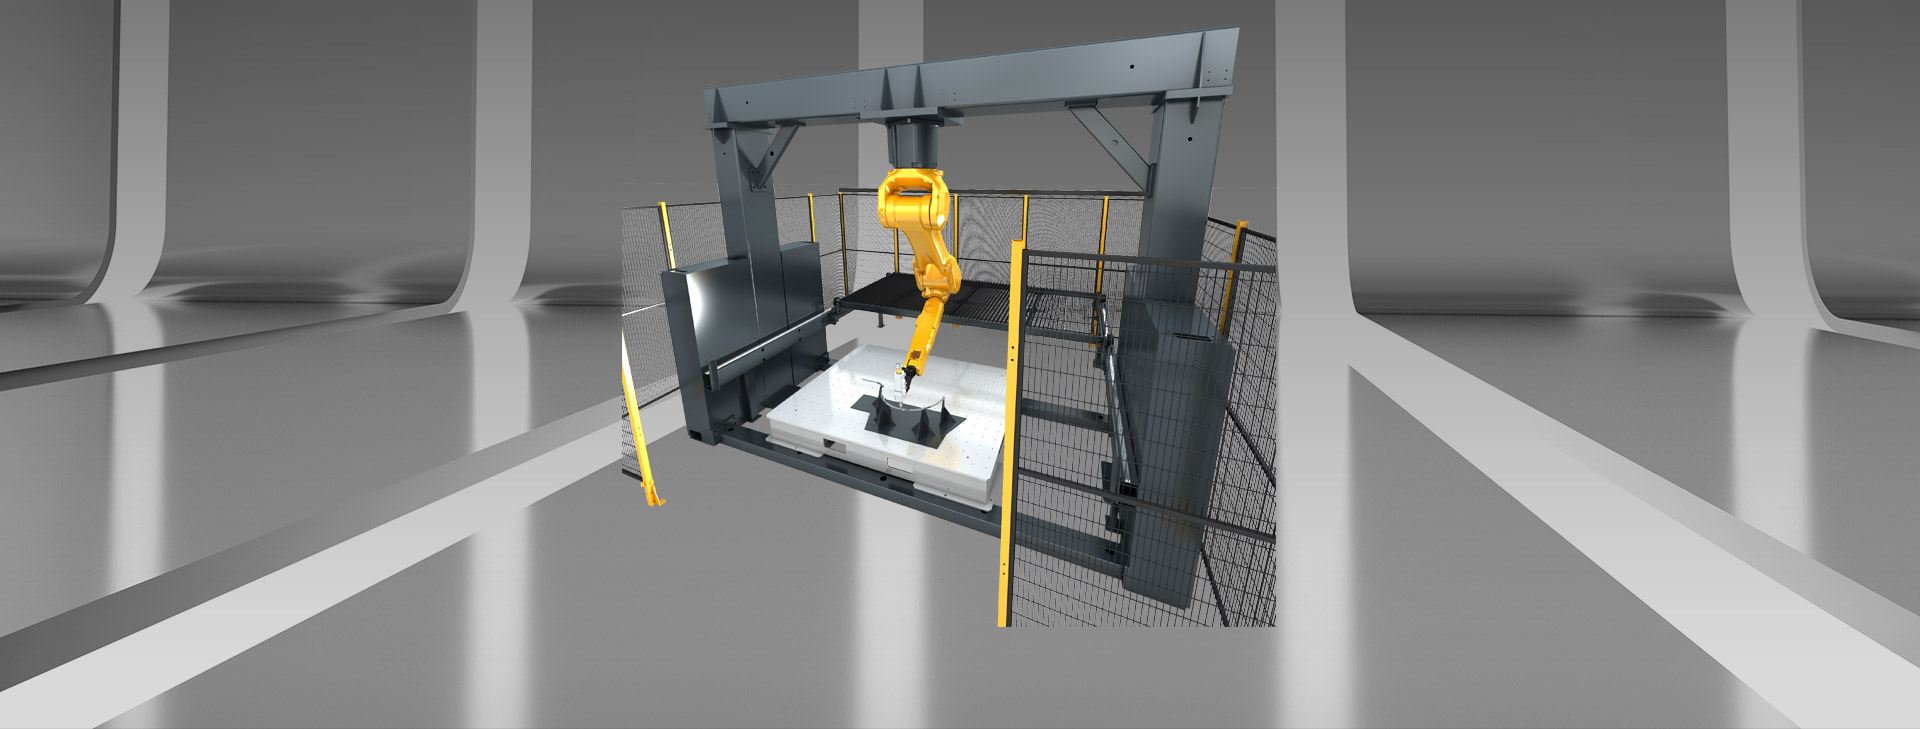 3D Roboter Laser Schneiden Maschine mit Gantry Struktur